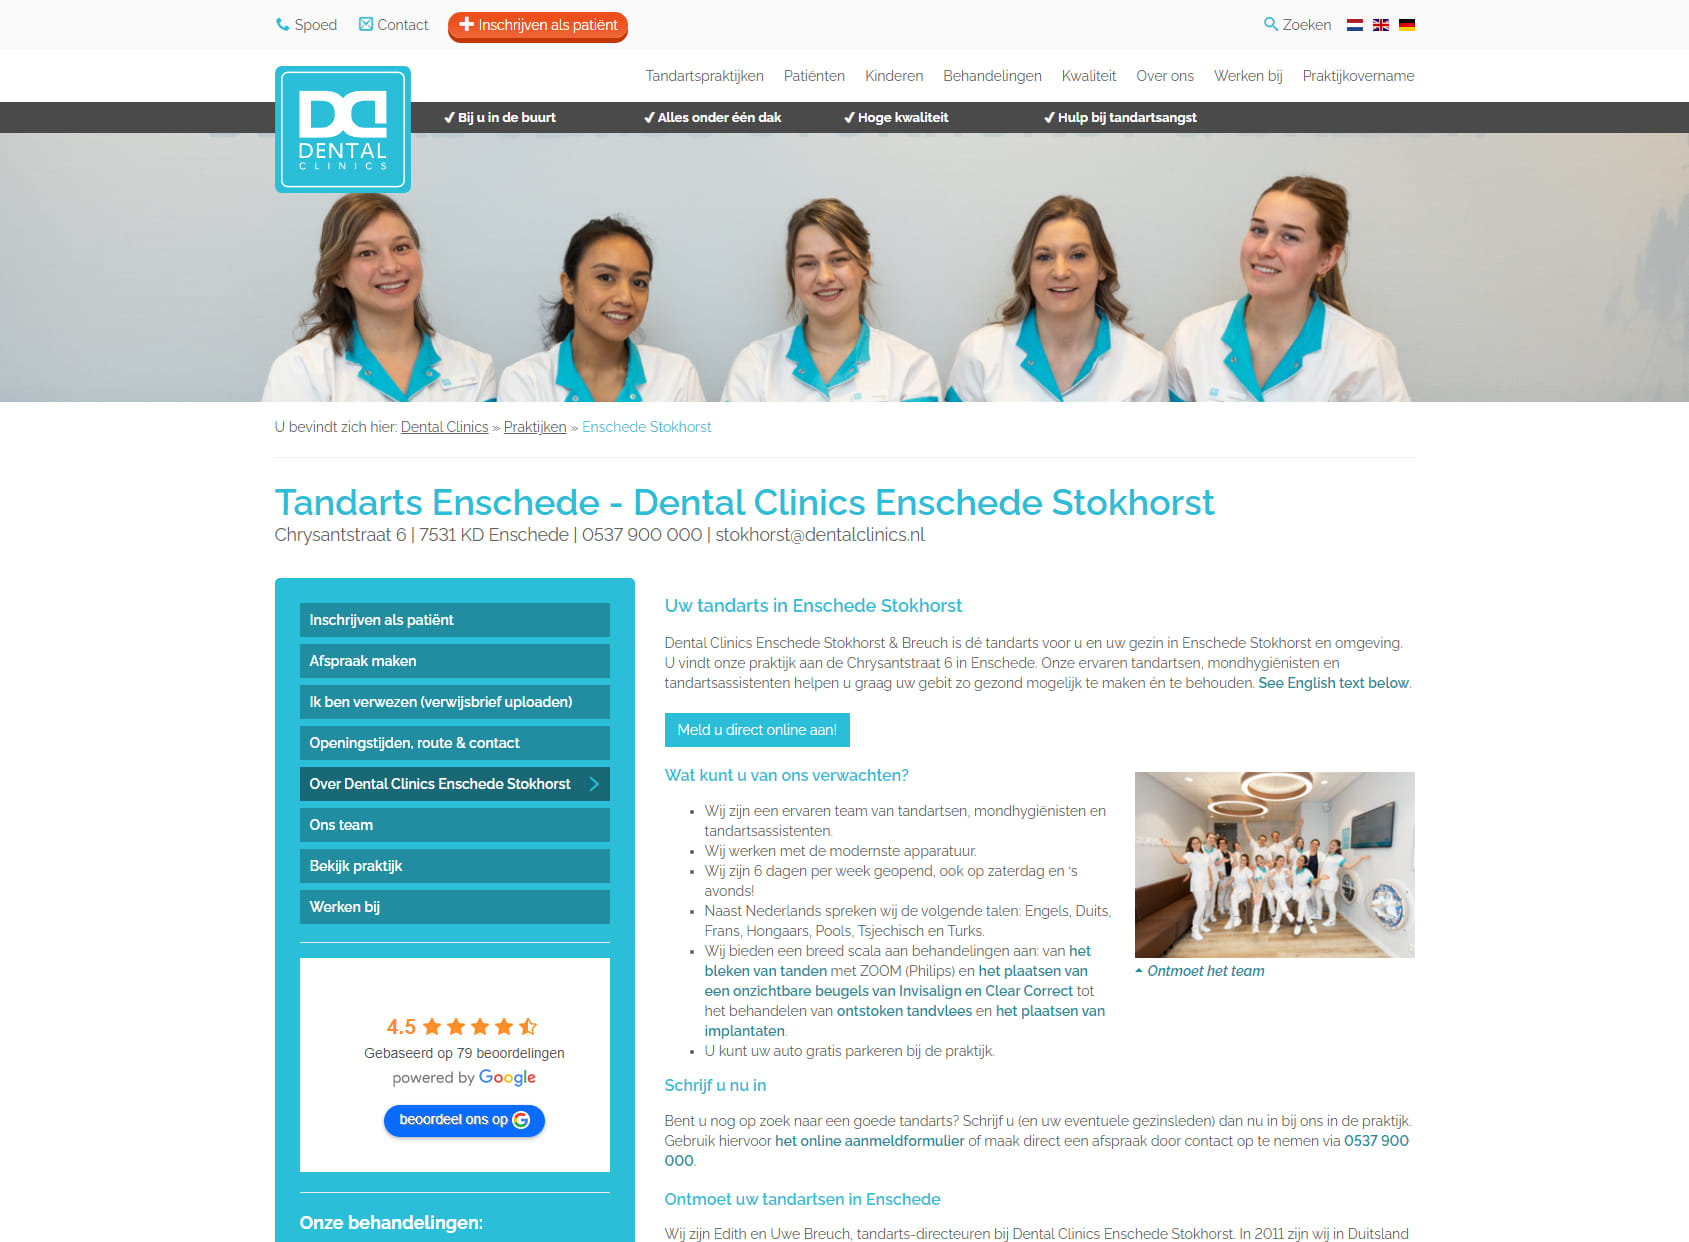 Dental Clinics Enschede Stokhorst & Breuch